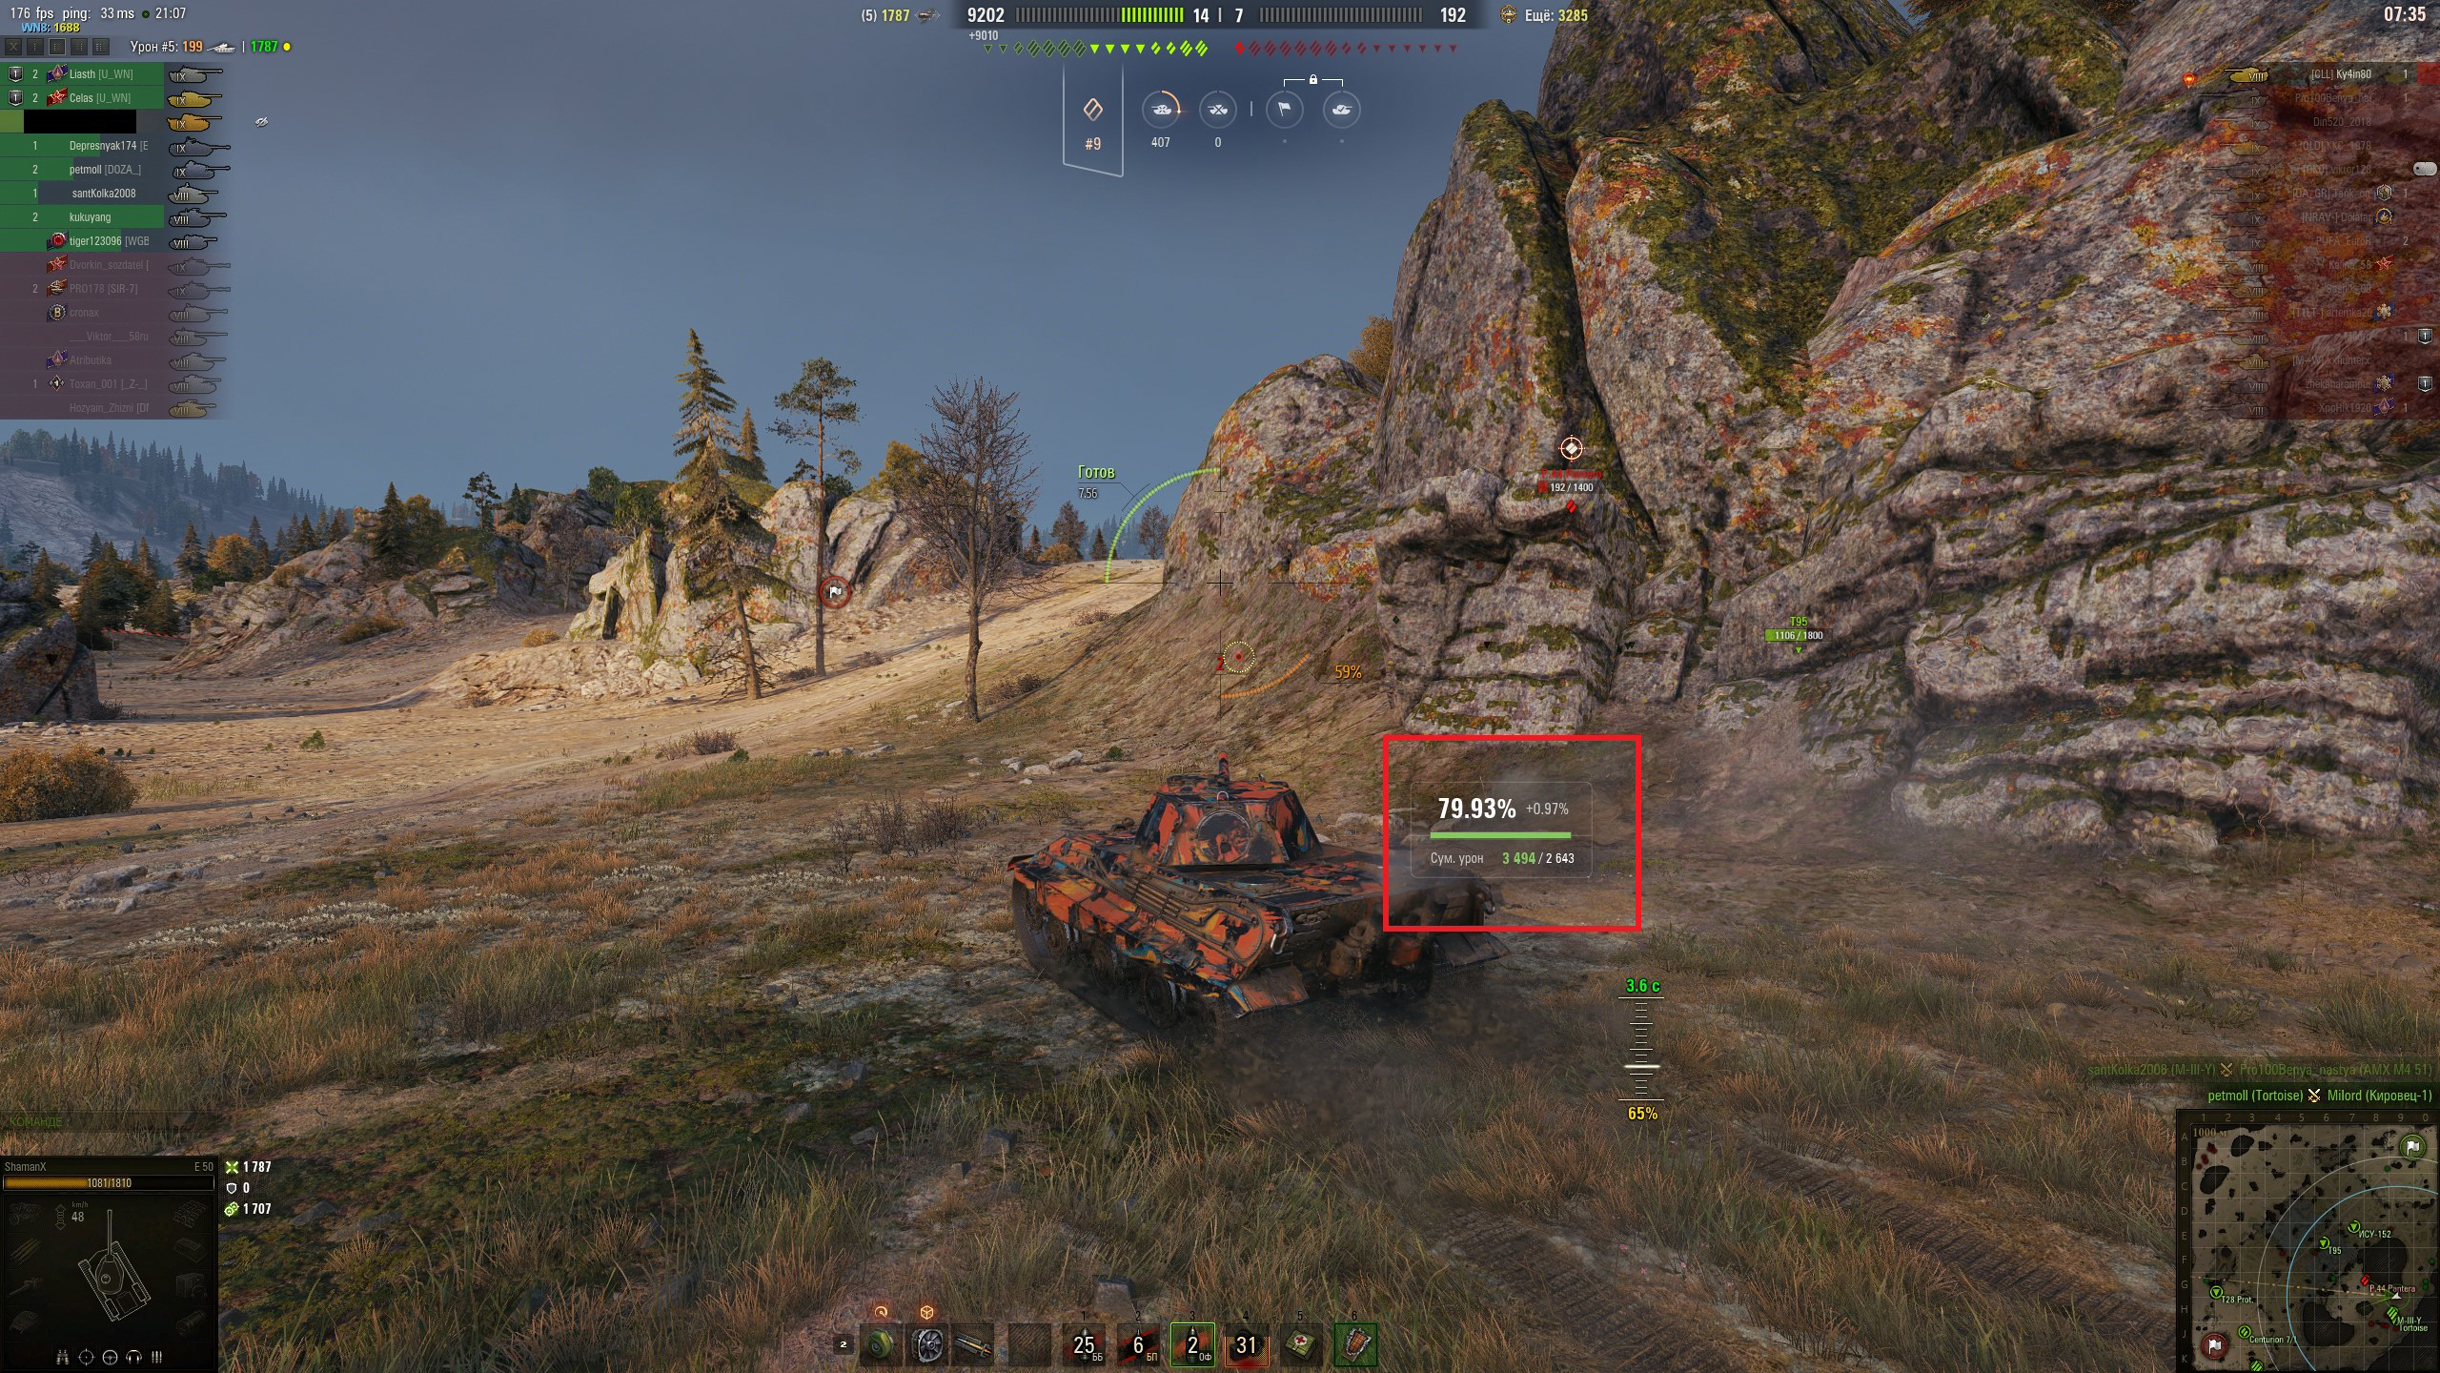 Отмеченная красным модификация в реальном времени показывает уровень мастерства игрока на танке, суммарный урон и то, сколько процентов удалось набрать за бой